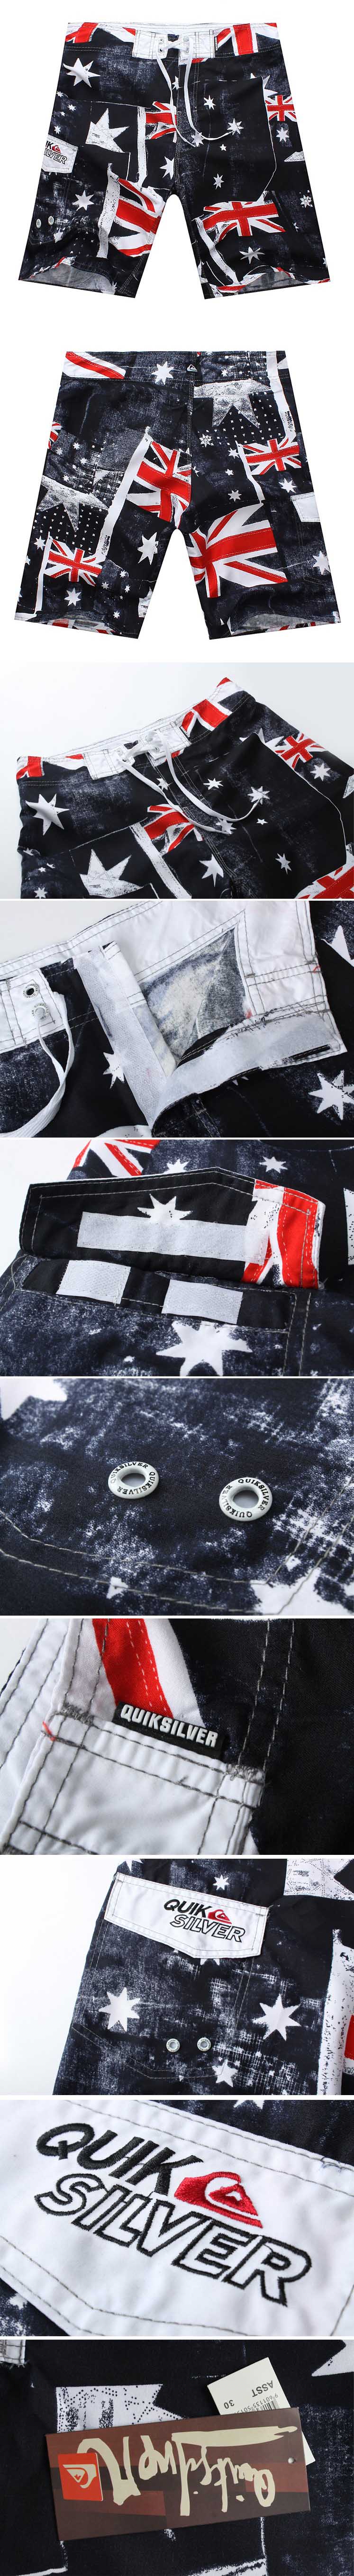 jual celana pantai pria merk quiksilver dengan motif bendera inggris terbuat dari bahan polyester sehingga nyaman dipakai